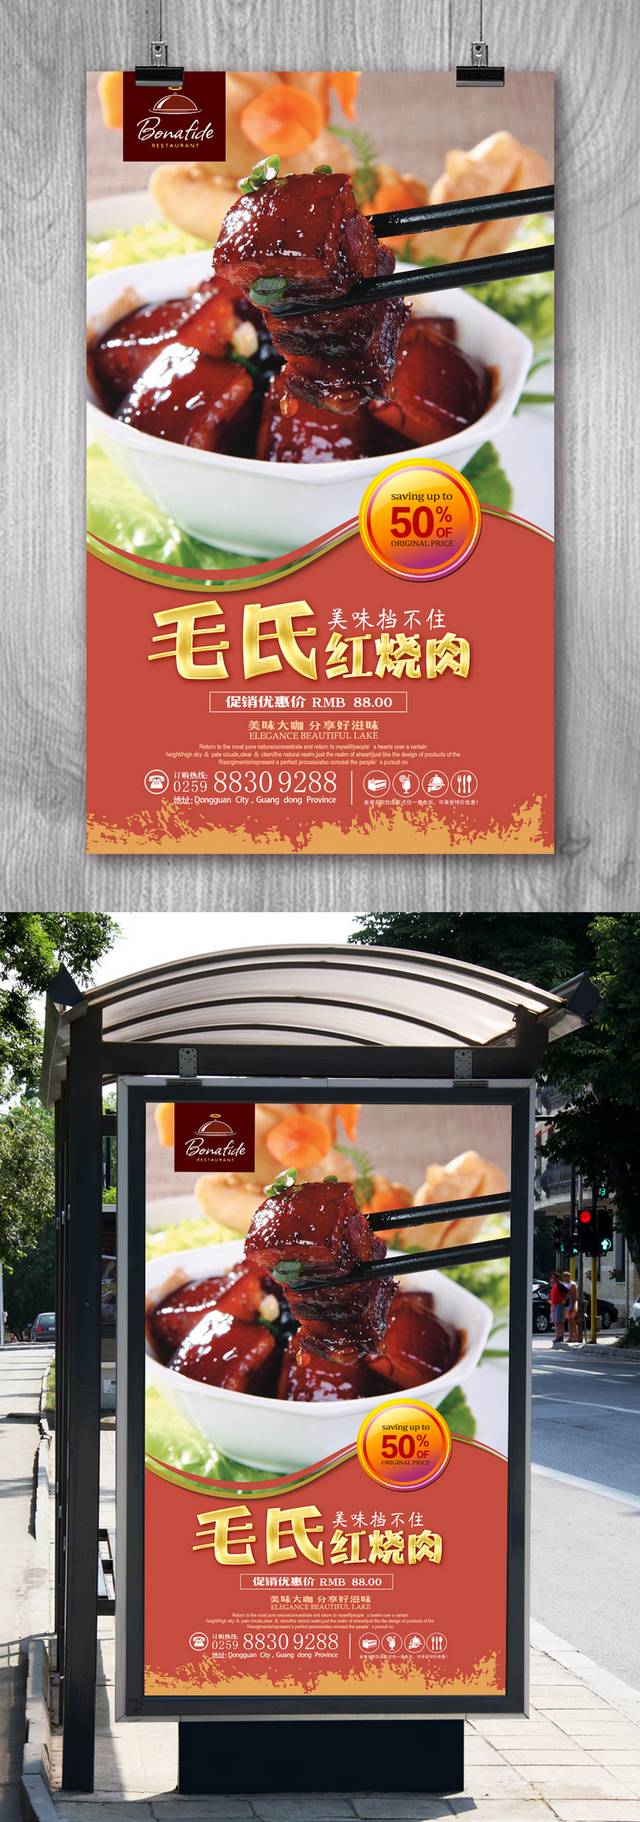 高清毛氏红烧肉促销海报设计